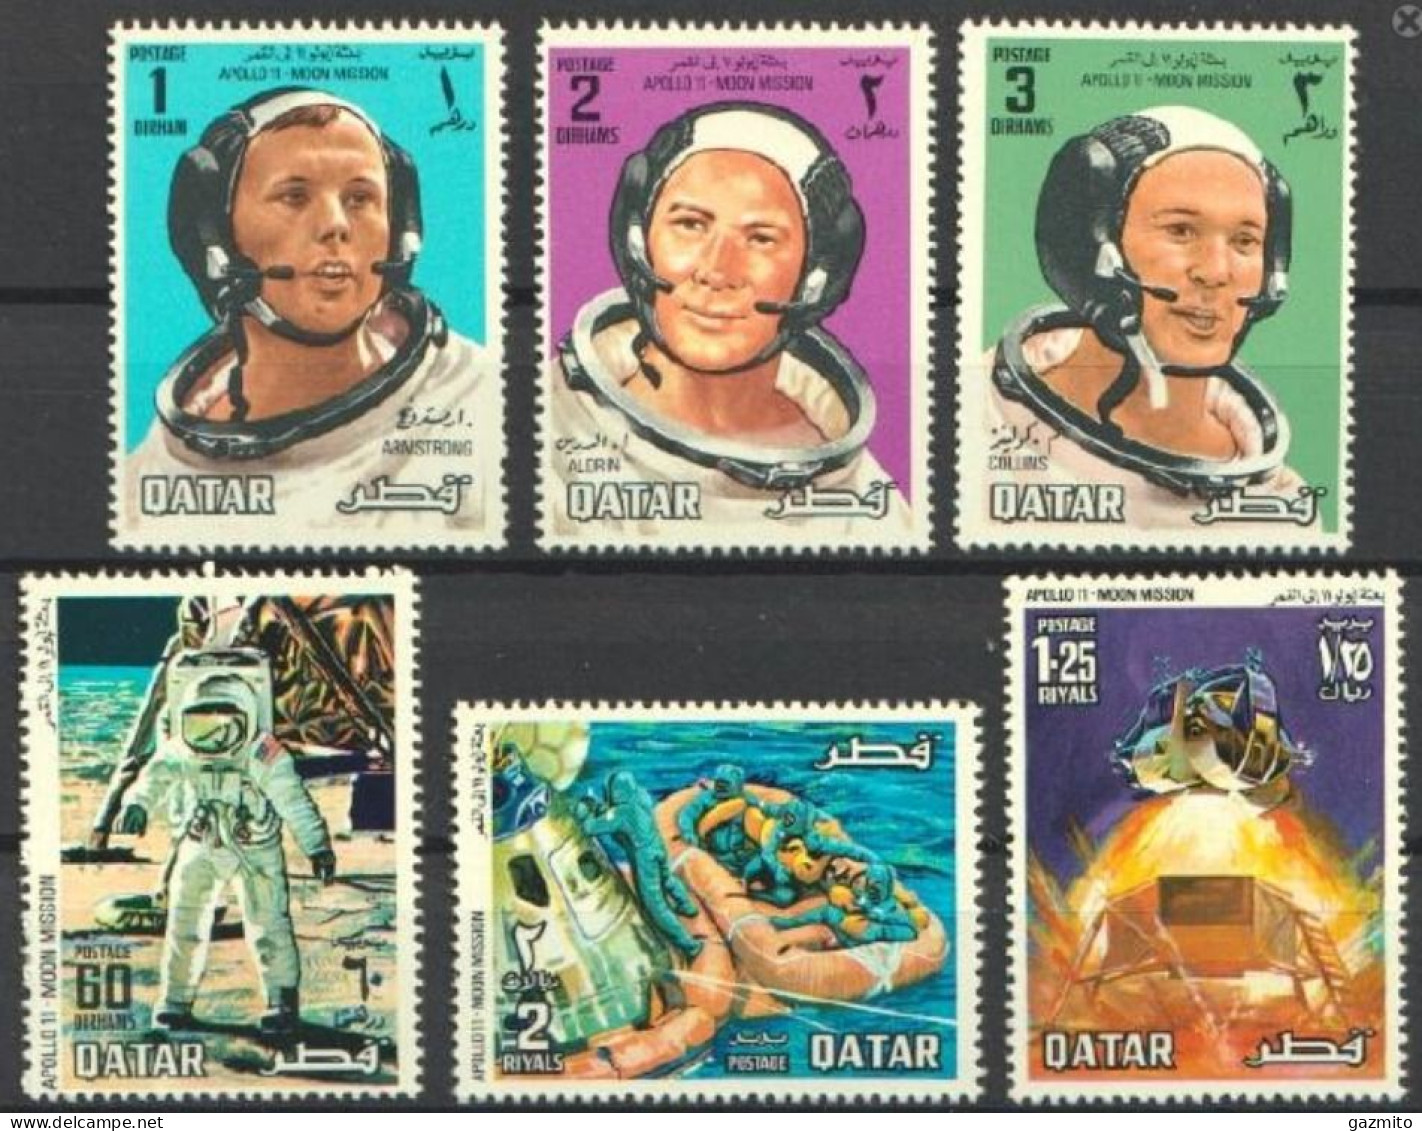 Quatar 1969, Space, Astronauts, 6val - Qatar